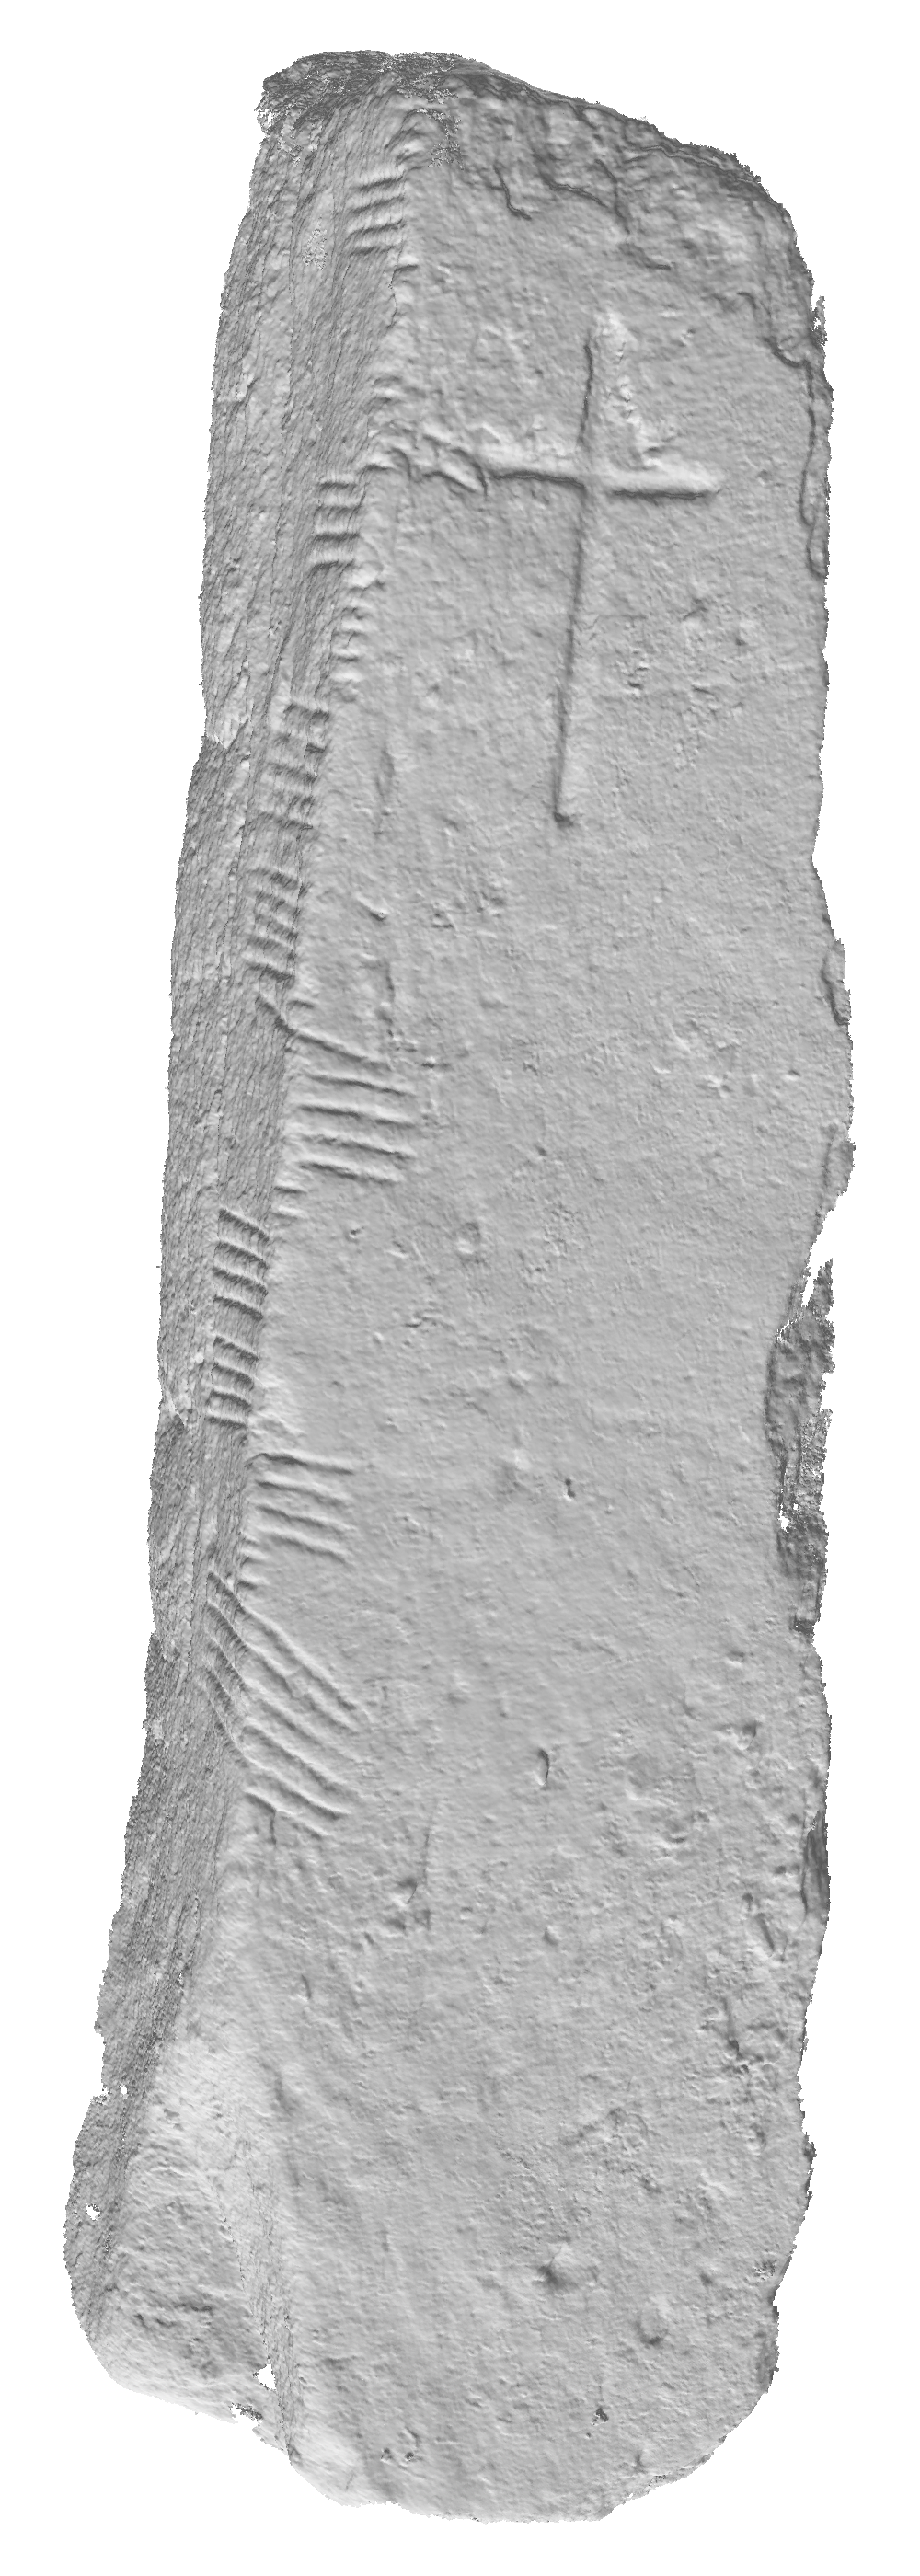 Abb. 2: 3D Scan des Ogham in 3D Project von CIIC
                        180. Emlagh East (IMLEACH DHÚN SÉANN), Co. Kerry. [Thiery 2022]